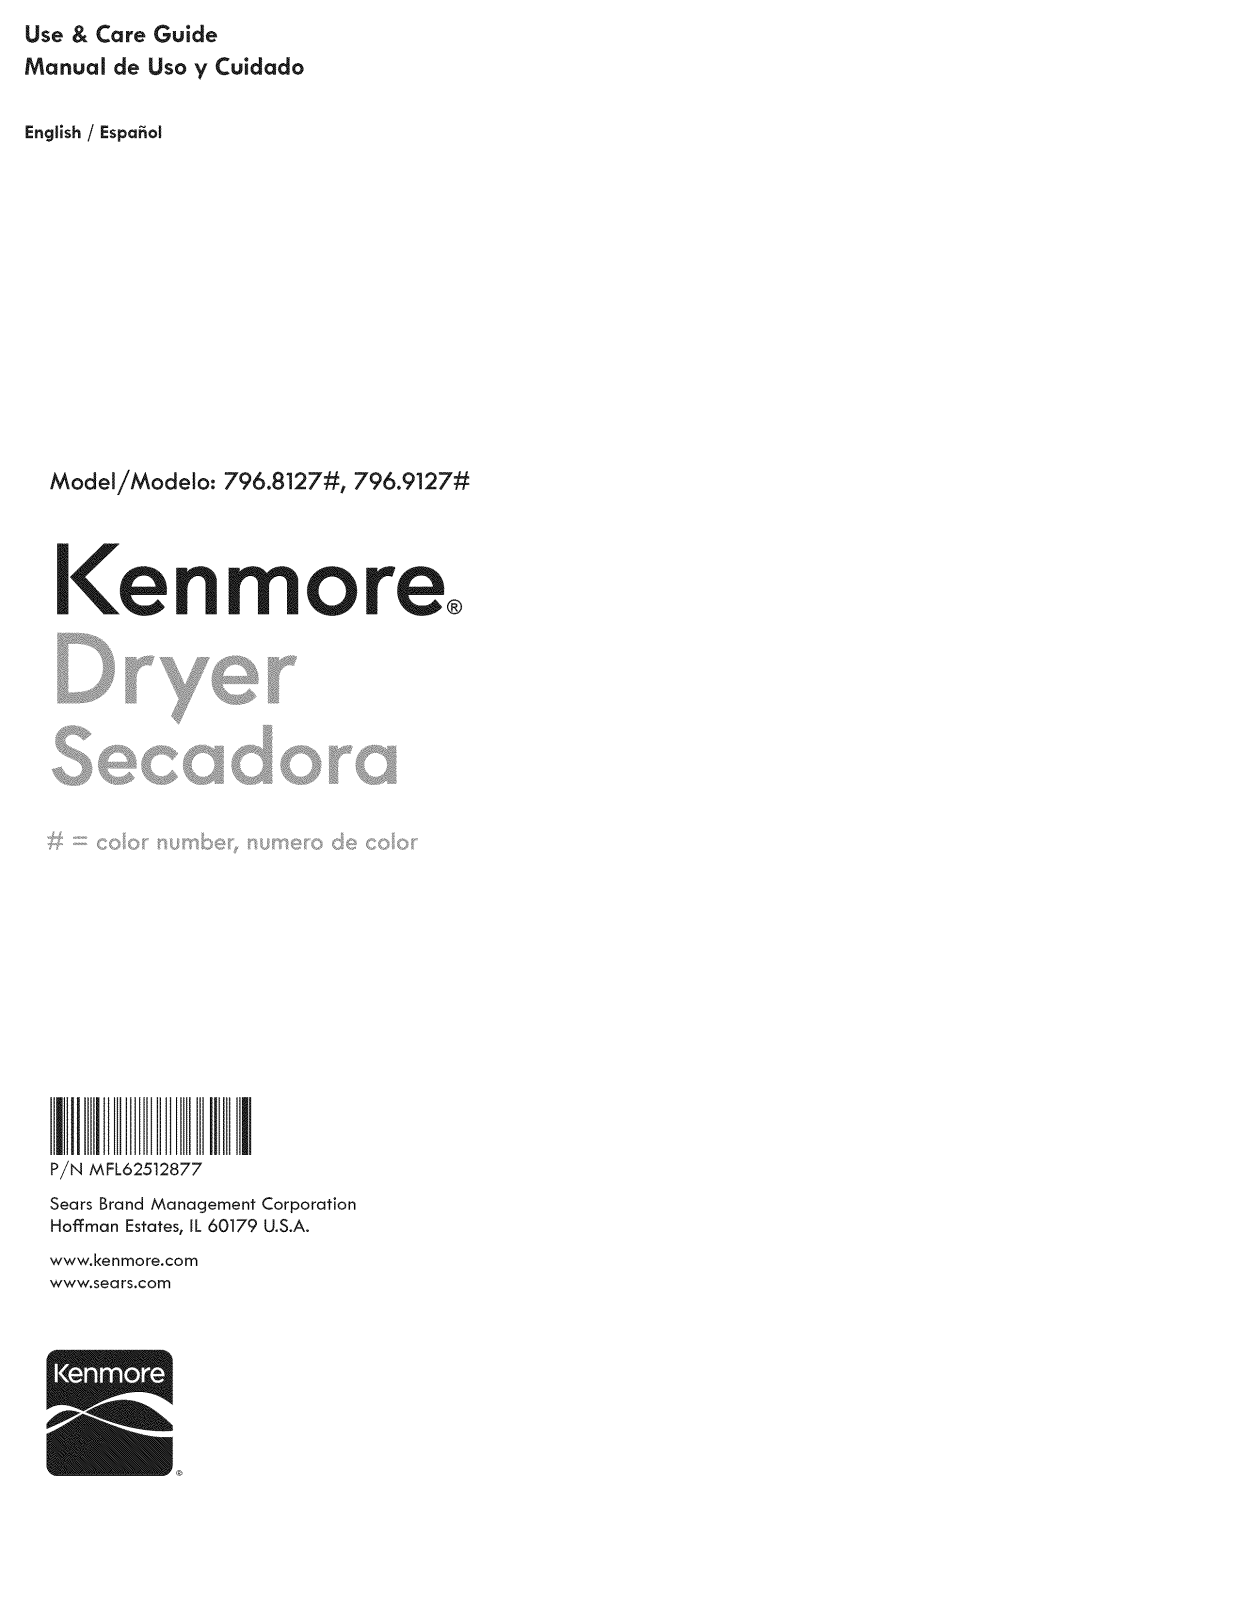 Kenmore 79681272210, 79691272210 Owner’s Manual